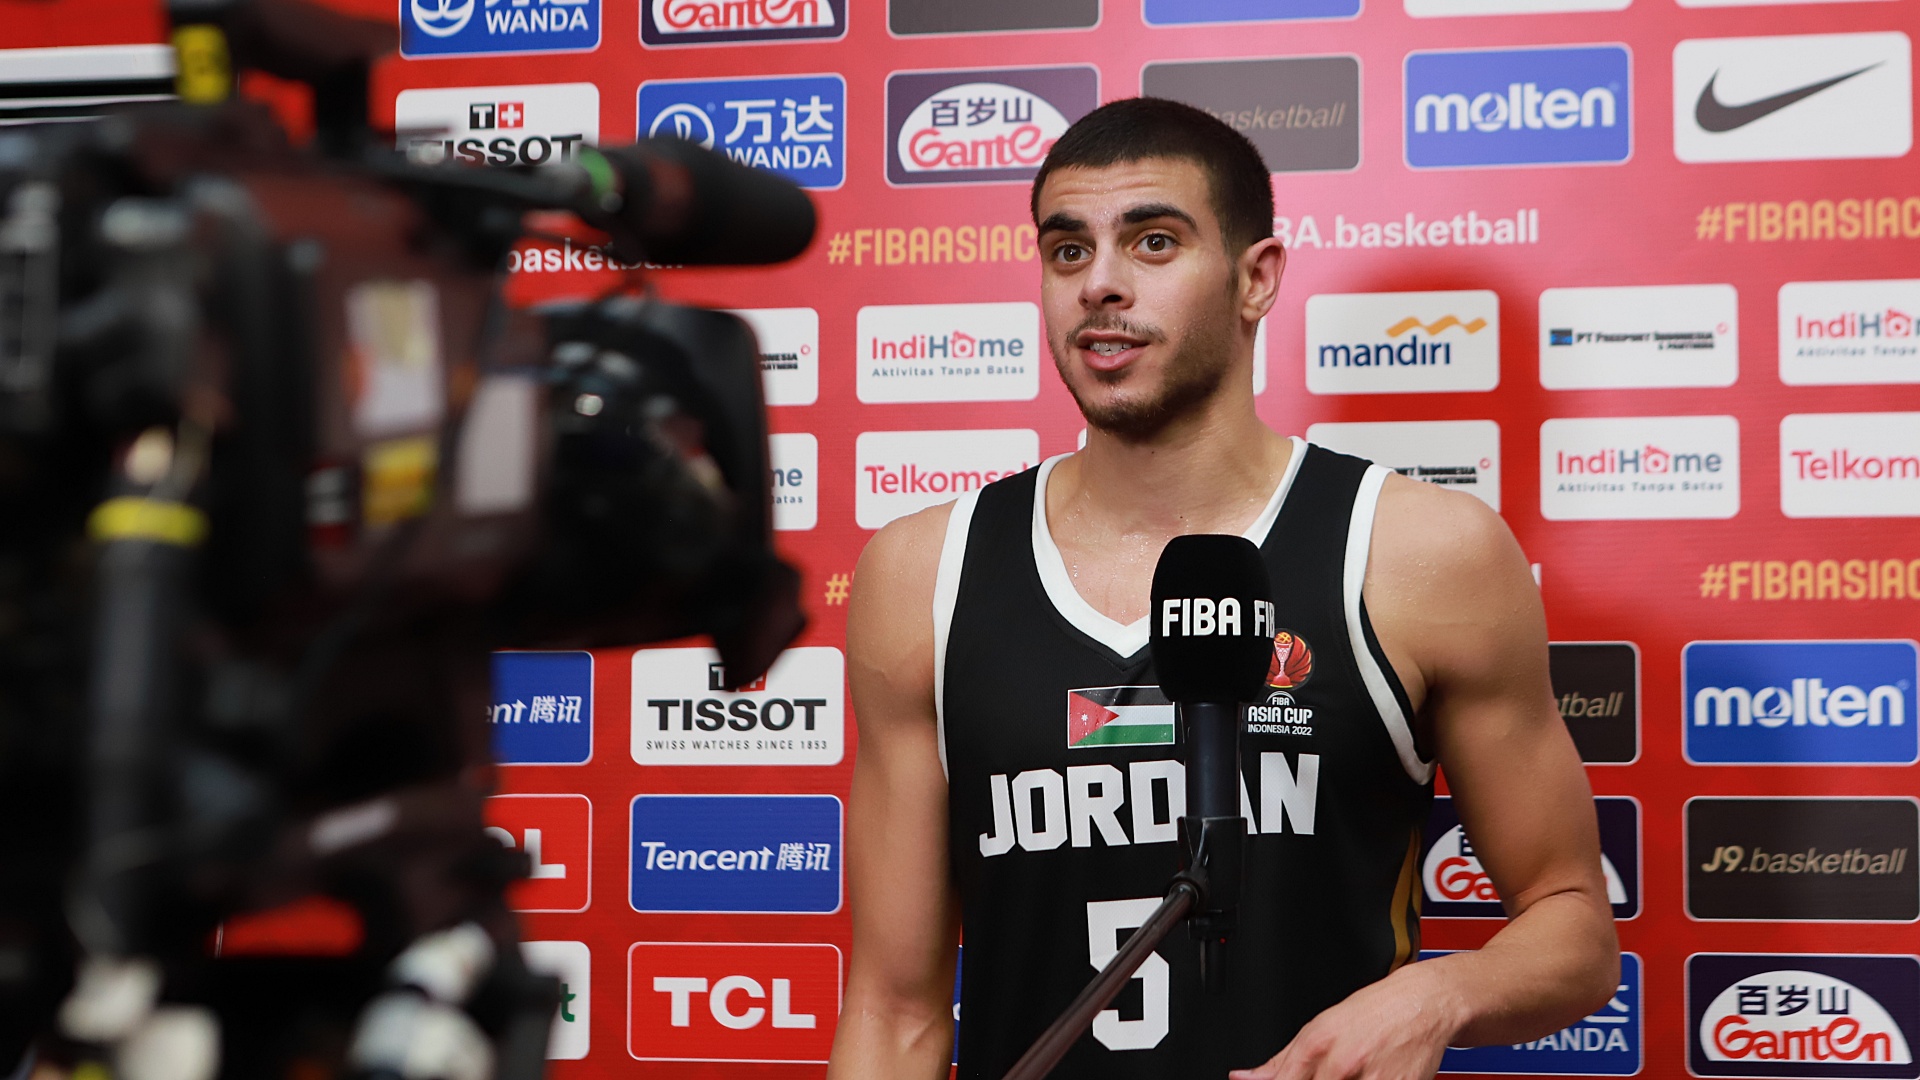 Piala Asia FIBA 2022: Loloskan Yordania dengan Three Point Buzzer Beater, Ini Komentar Freddy Ibrahim